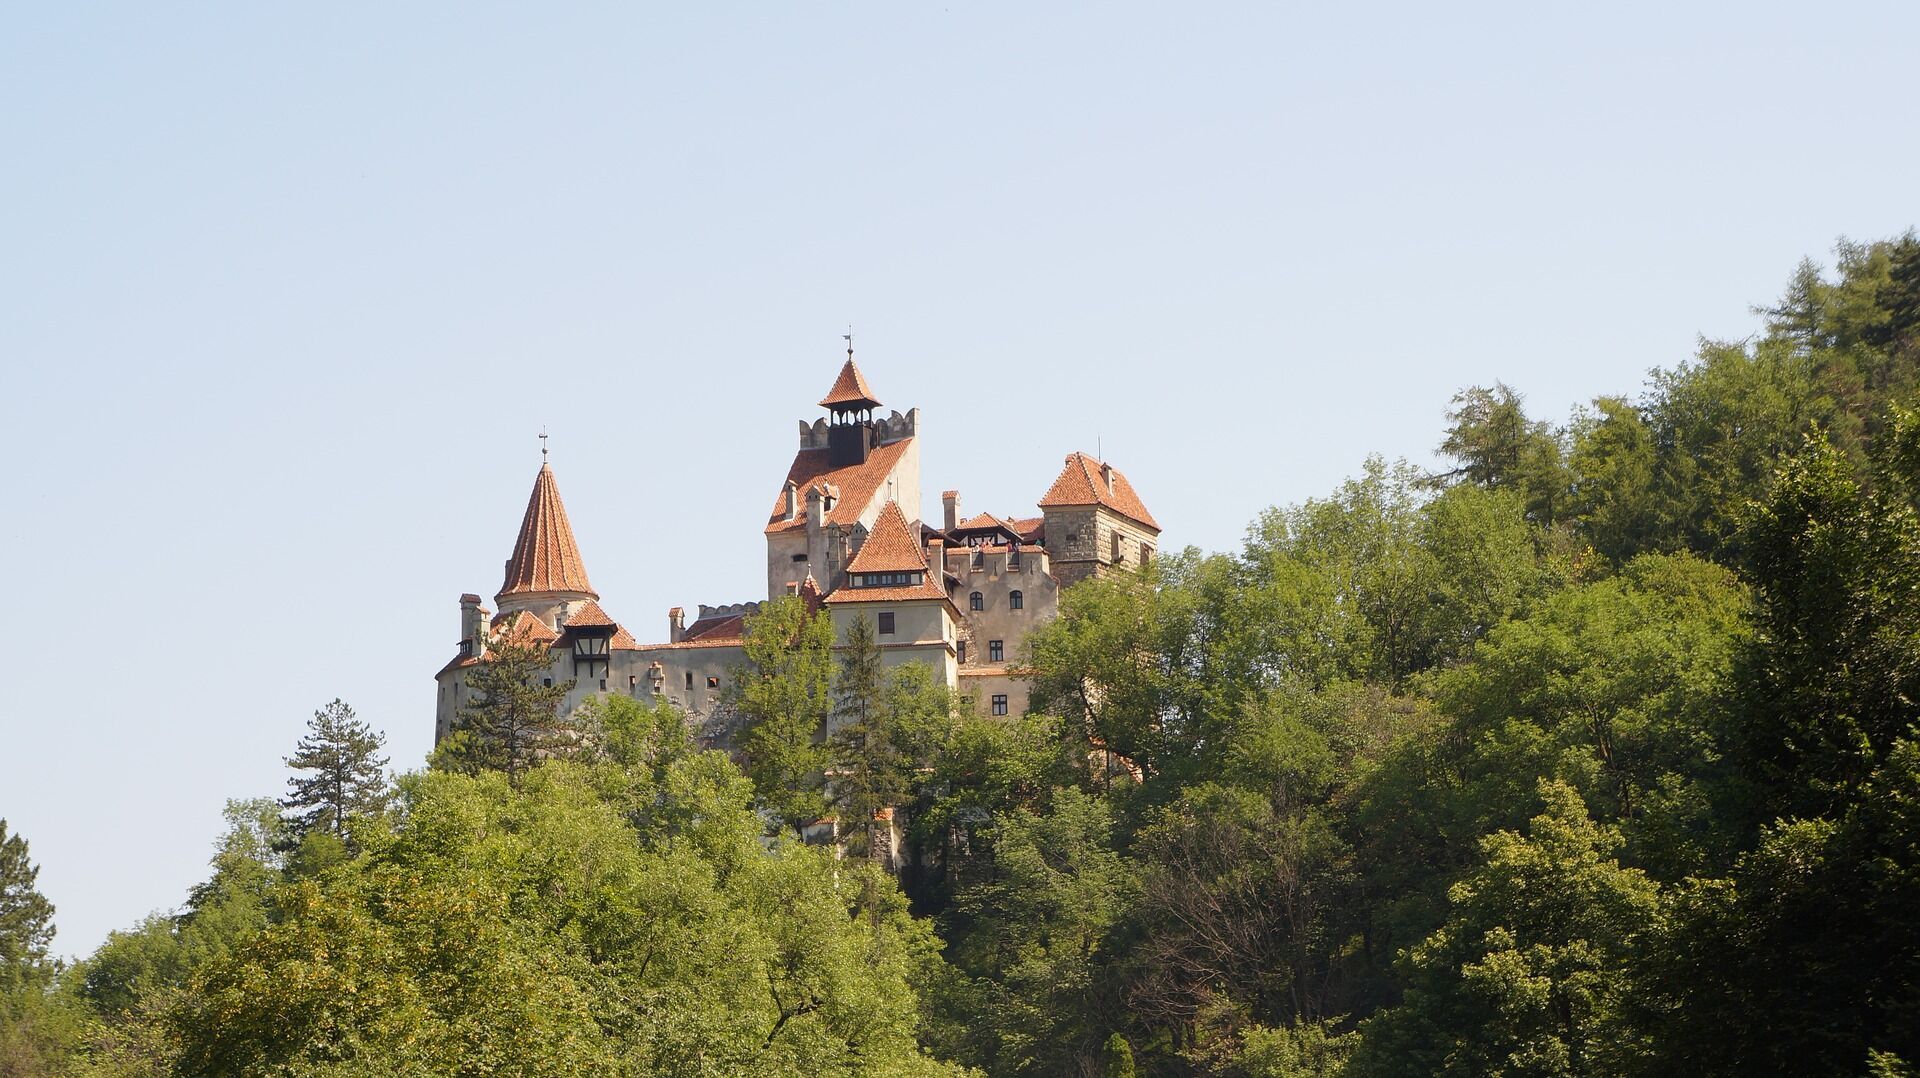 Дом Власть Цепаша описан в романе о Графе Дракуле.